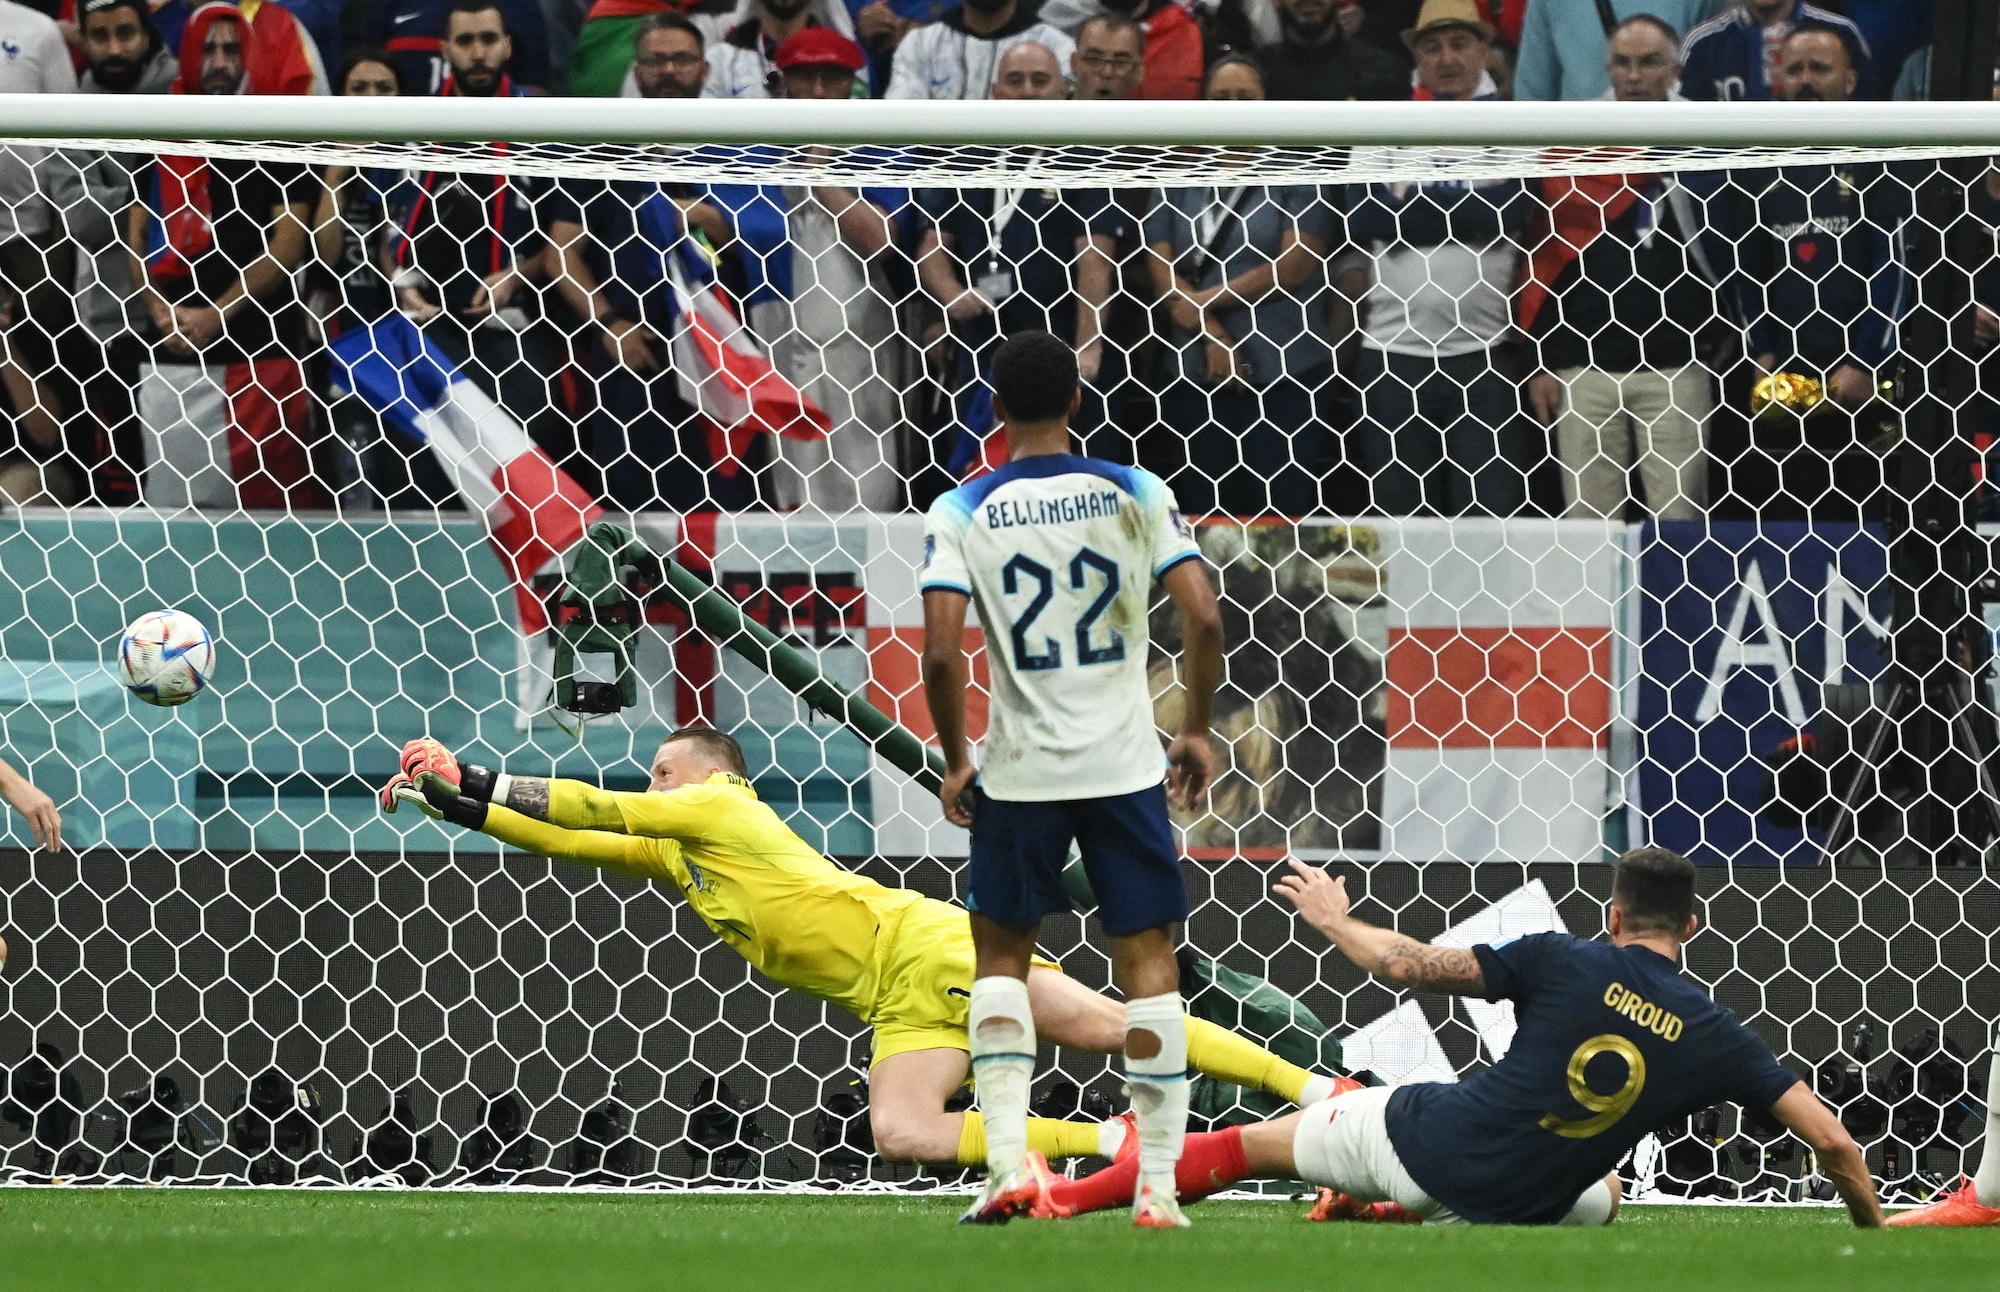 مباراة فرنسا ضد إنجلترا